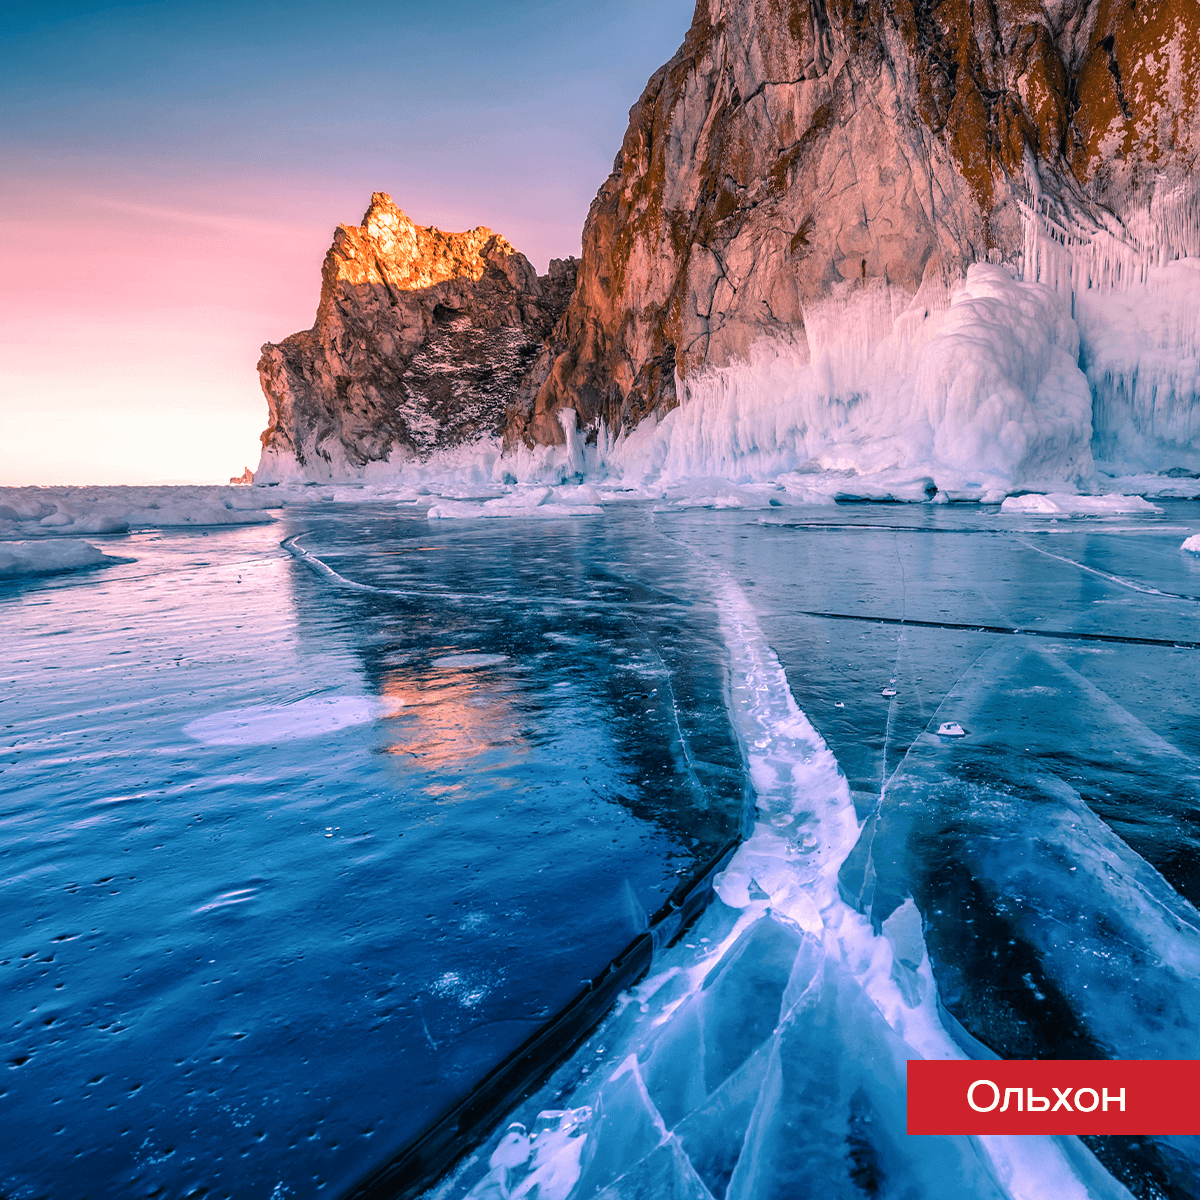 Путешествие на Байкал уже который год – зимний мейнстрим. Невероятной красоты ледяные пейзажи, вкусная местная рыба и душевное равновесие обретается именно здесь.-2